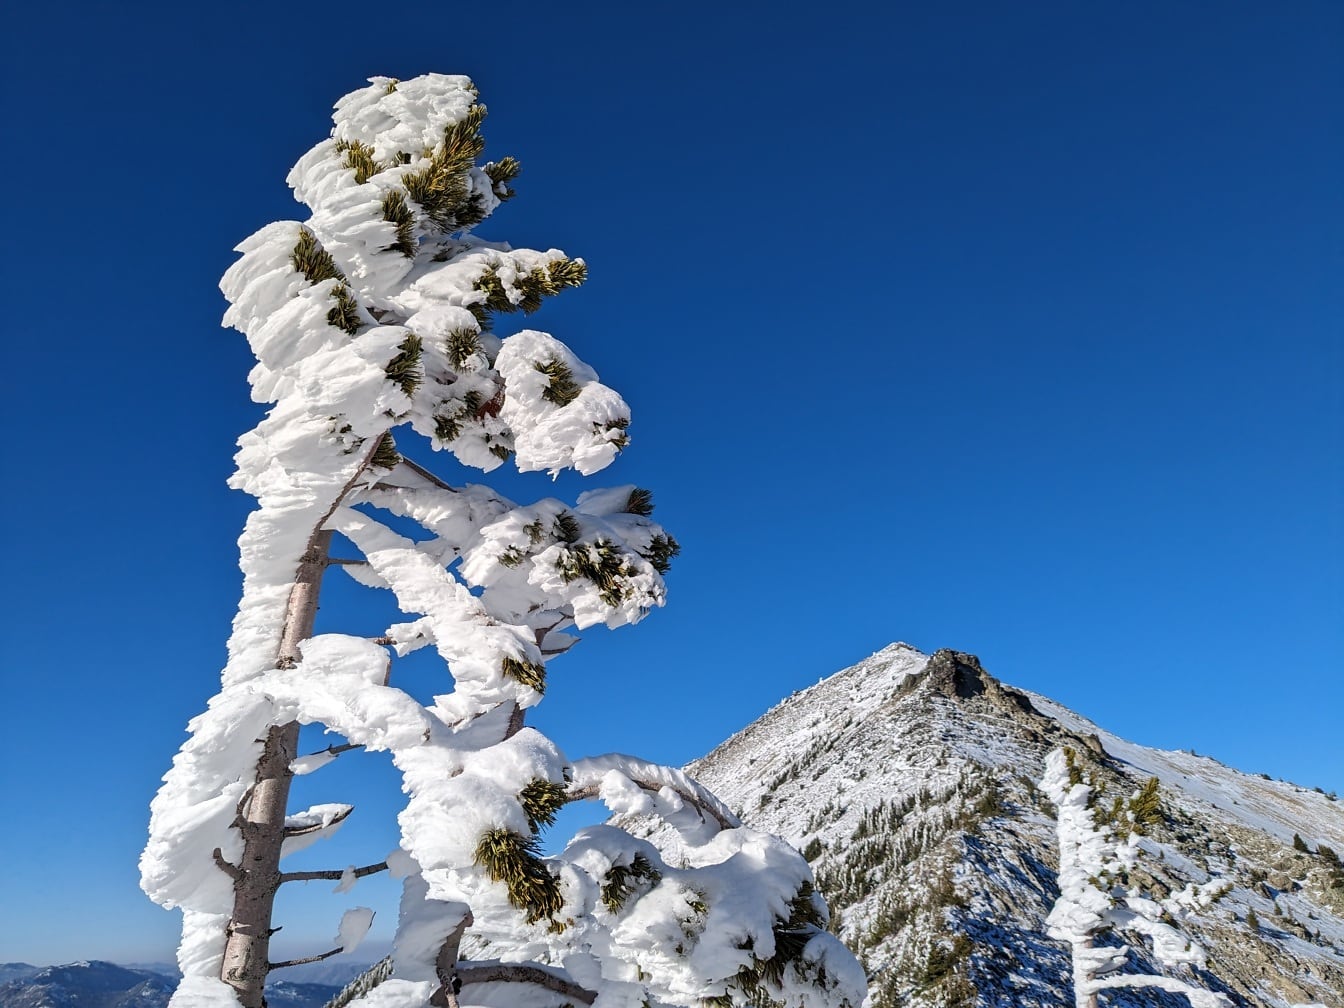 Nadelbaumzweige mit gefrorenem Schnee mit dunkelblauem Himmel als Hintergrund